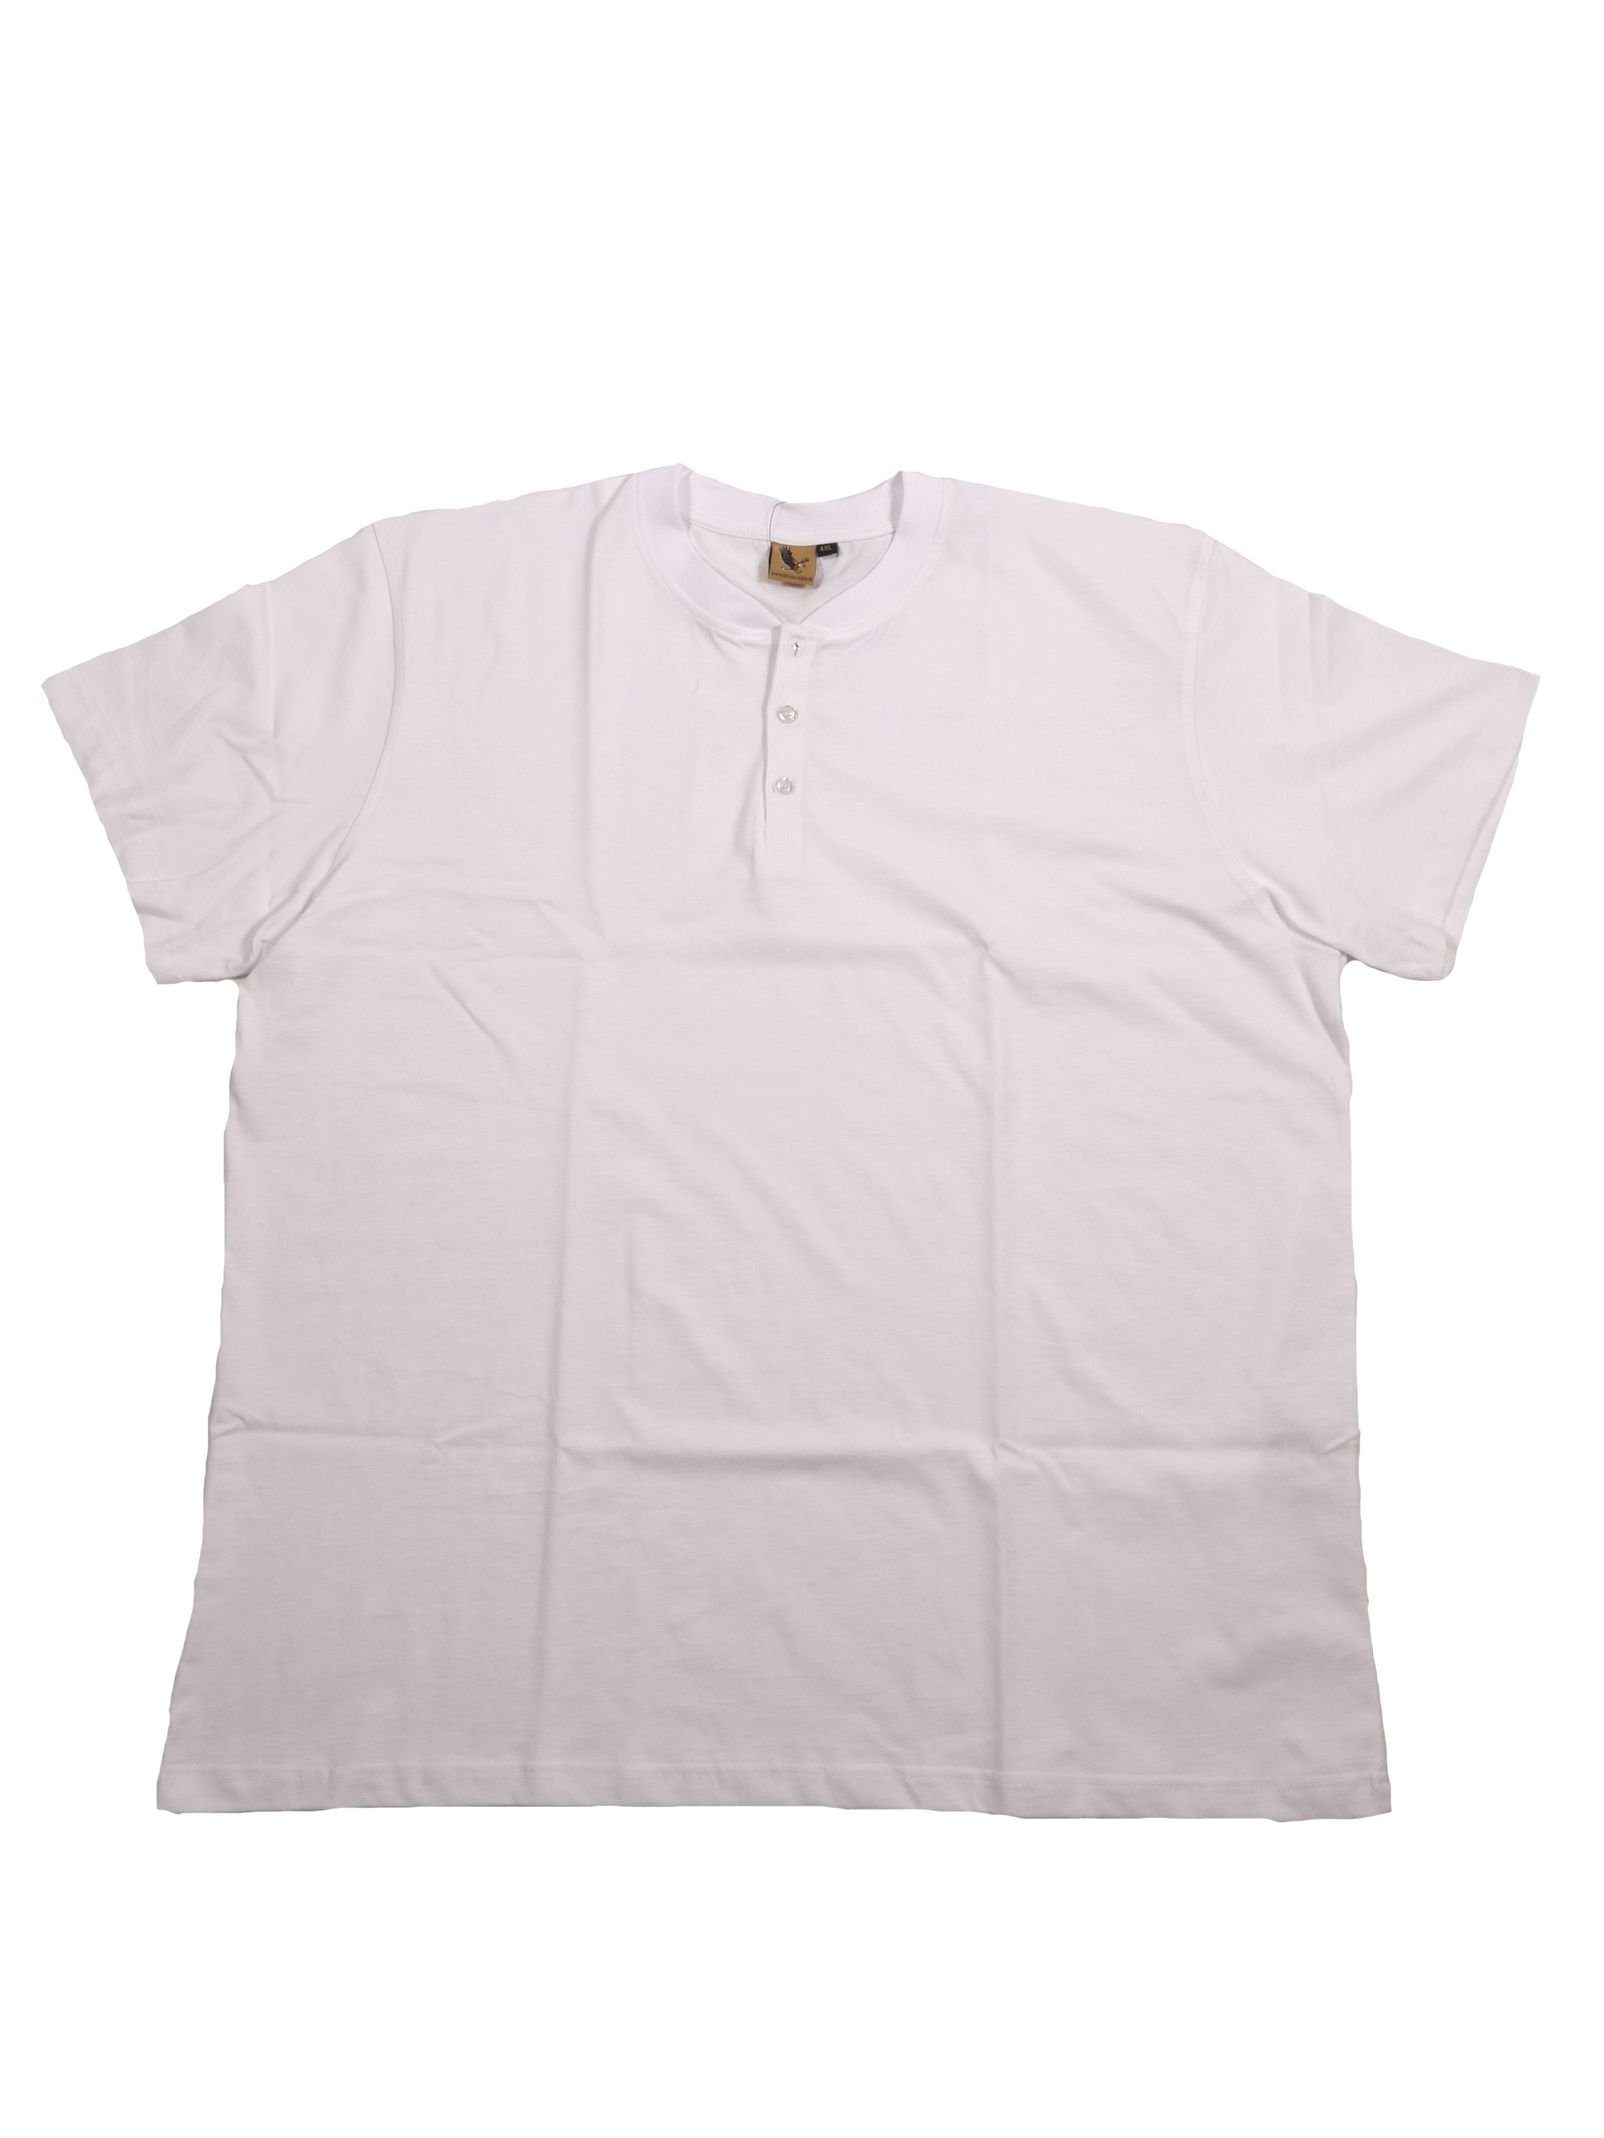 ABRAXAS T-Shirt Kurzarm-Shirt mit Knopfleiste von Abraxas weiß bis 12XL